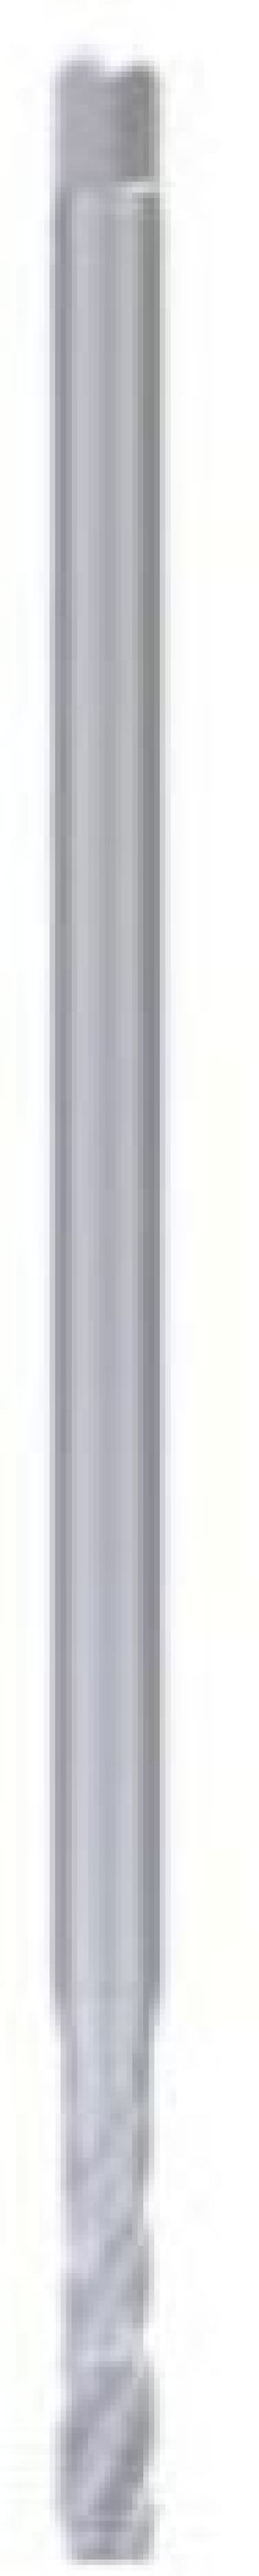 Fanar Gwintownik maszynowy M5 (C2-511121-0050) 1